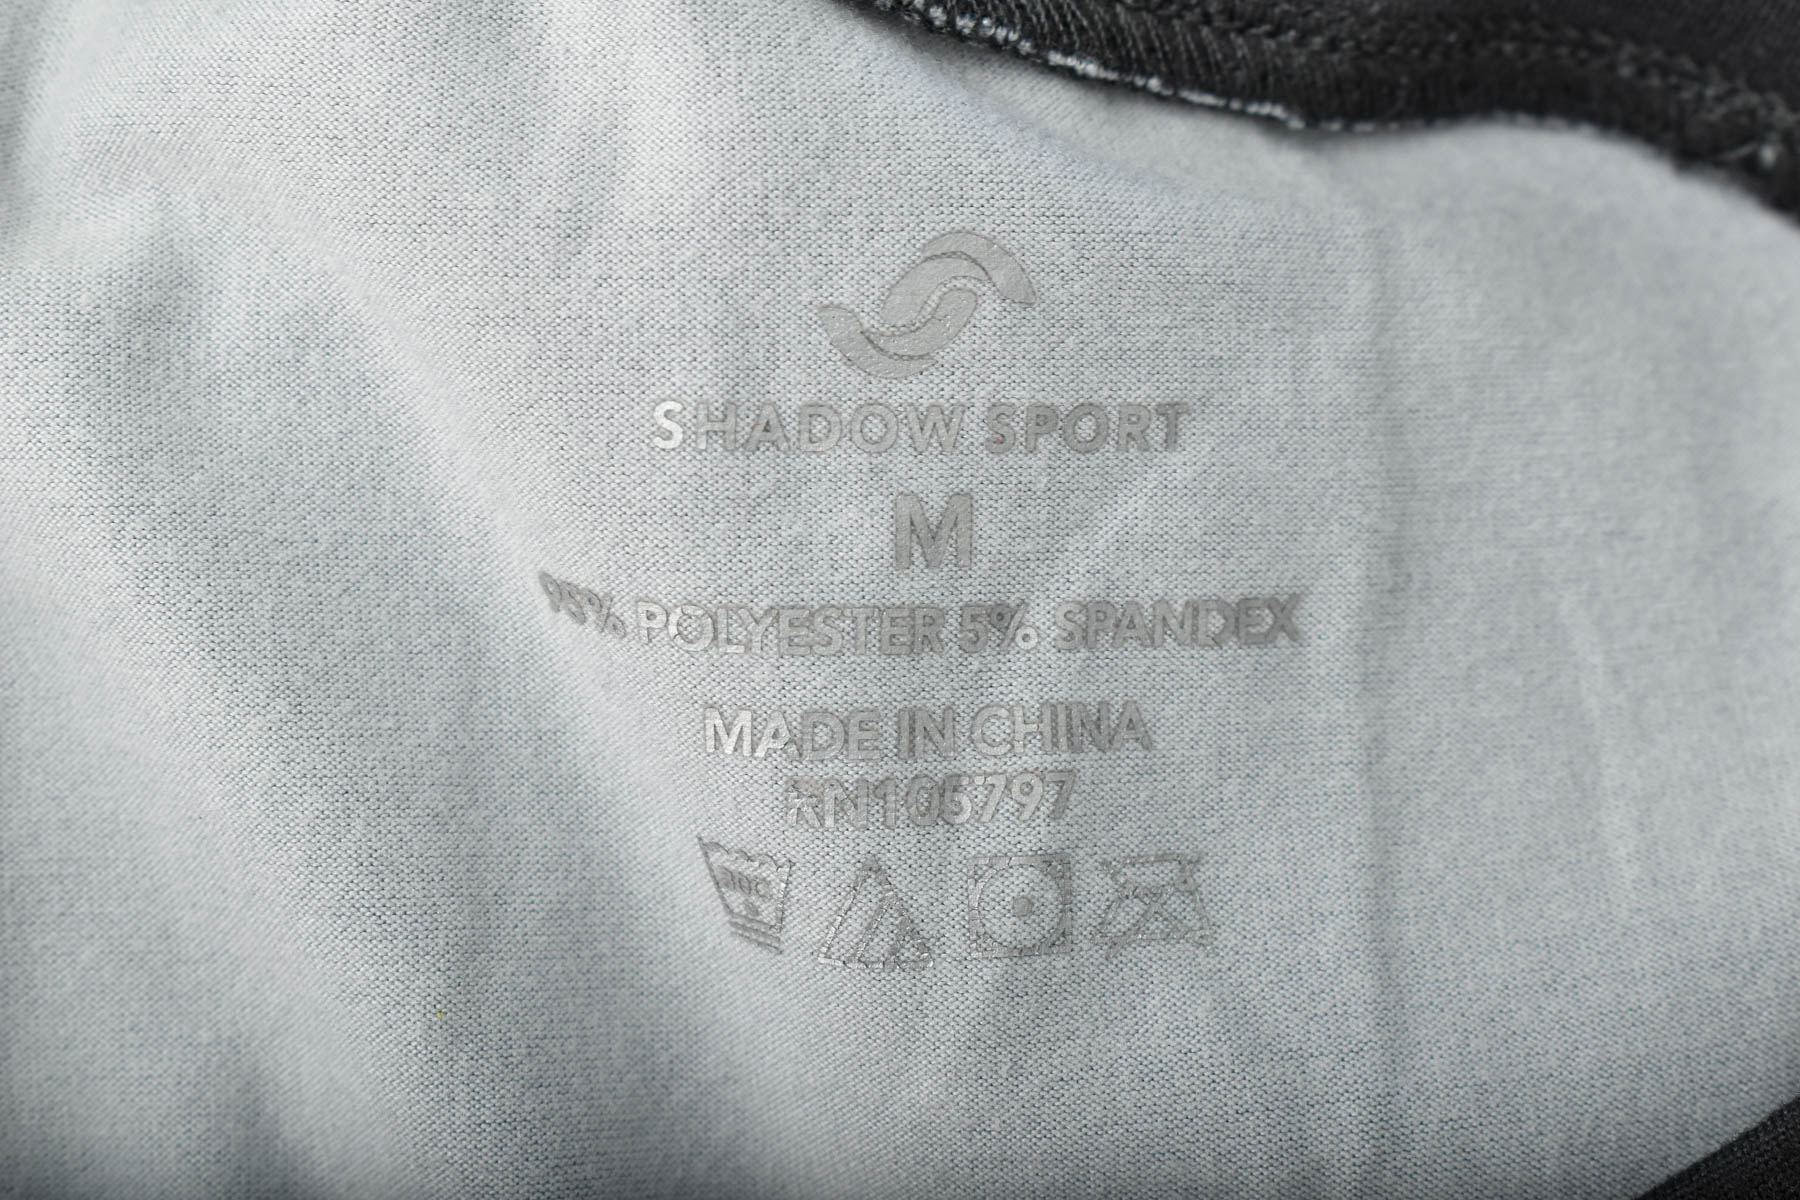 Women's t-shirt - SHADOW SPORT - 2